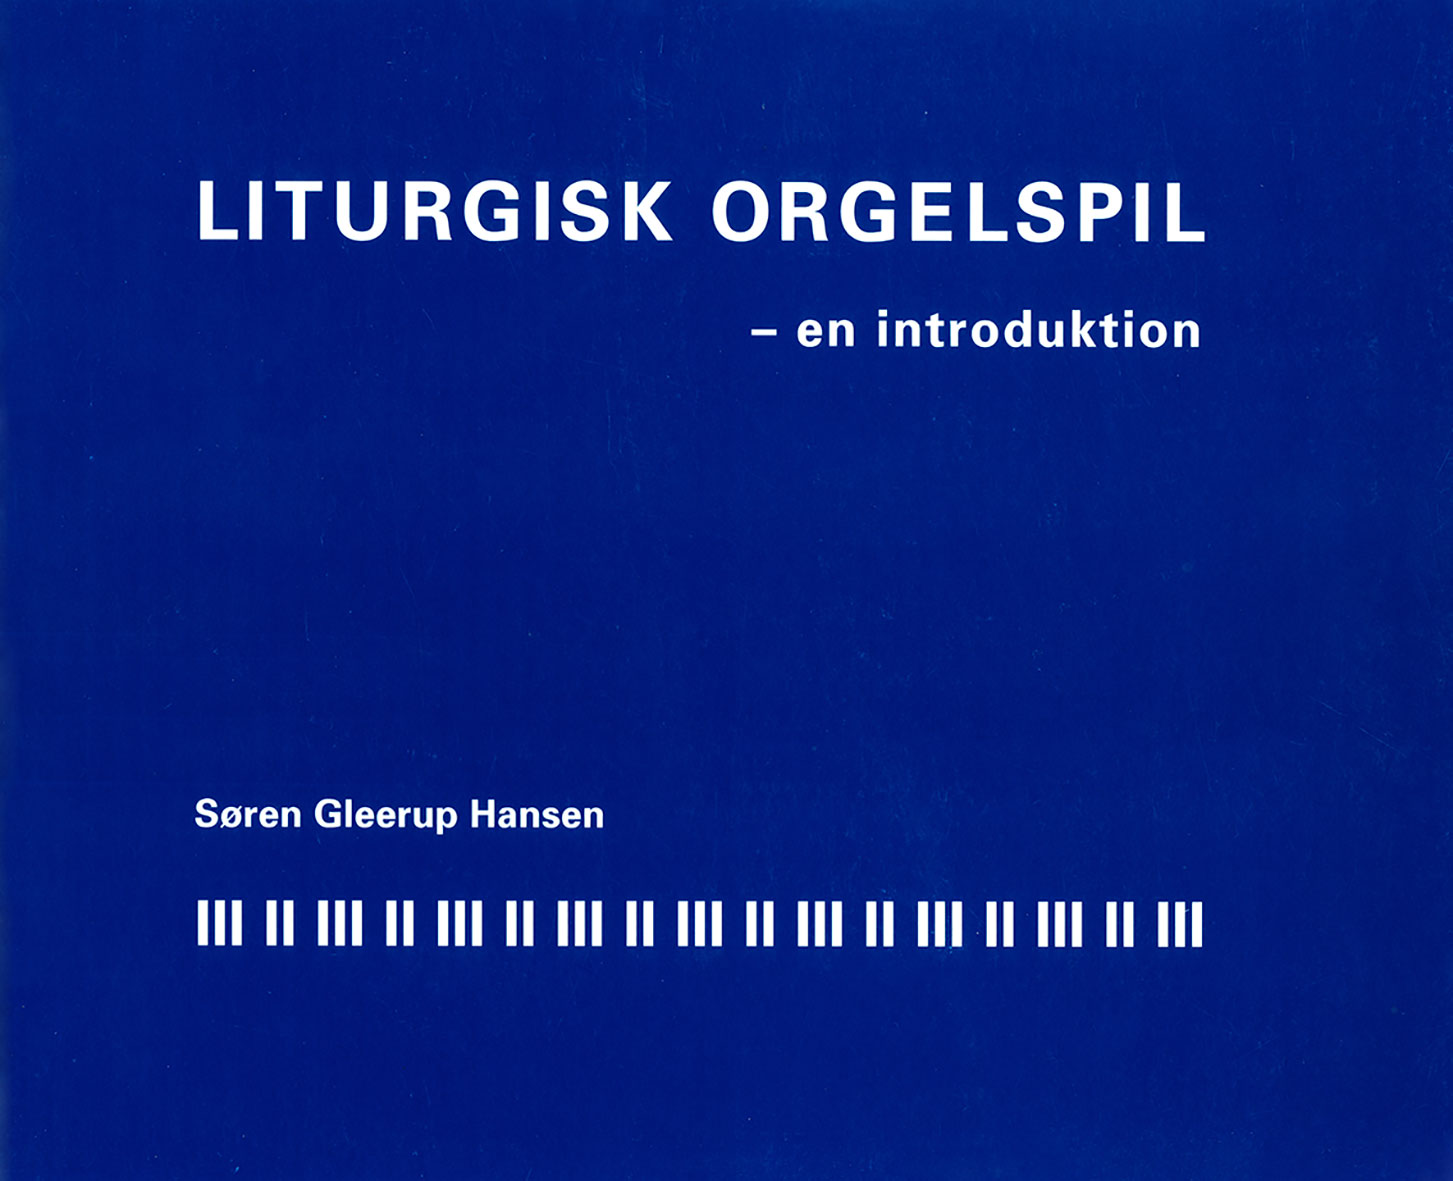 Liturgisk orgelspil – en introduktion